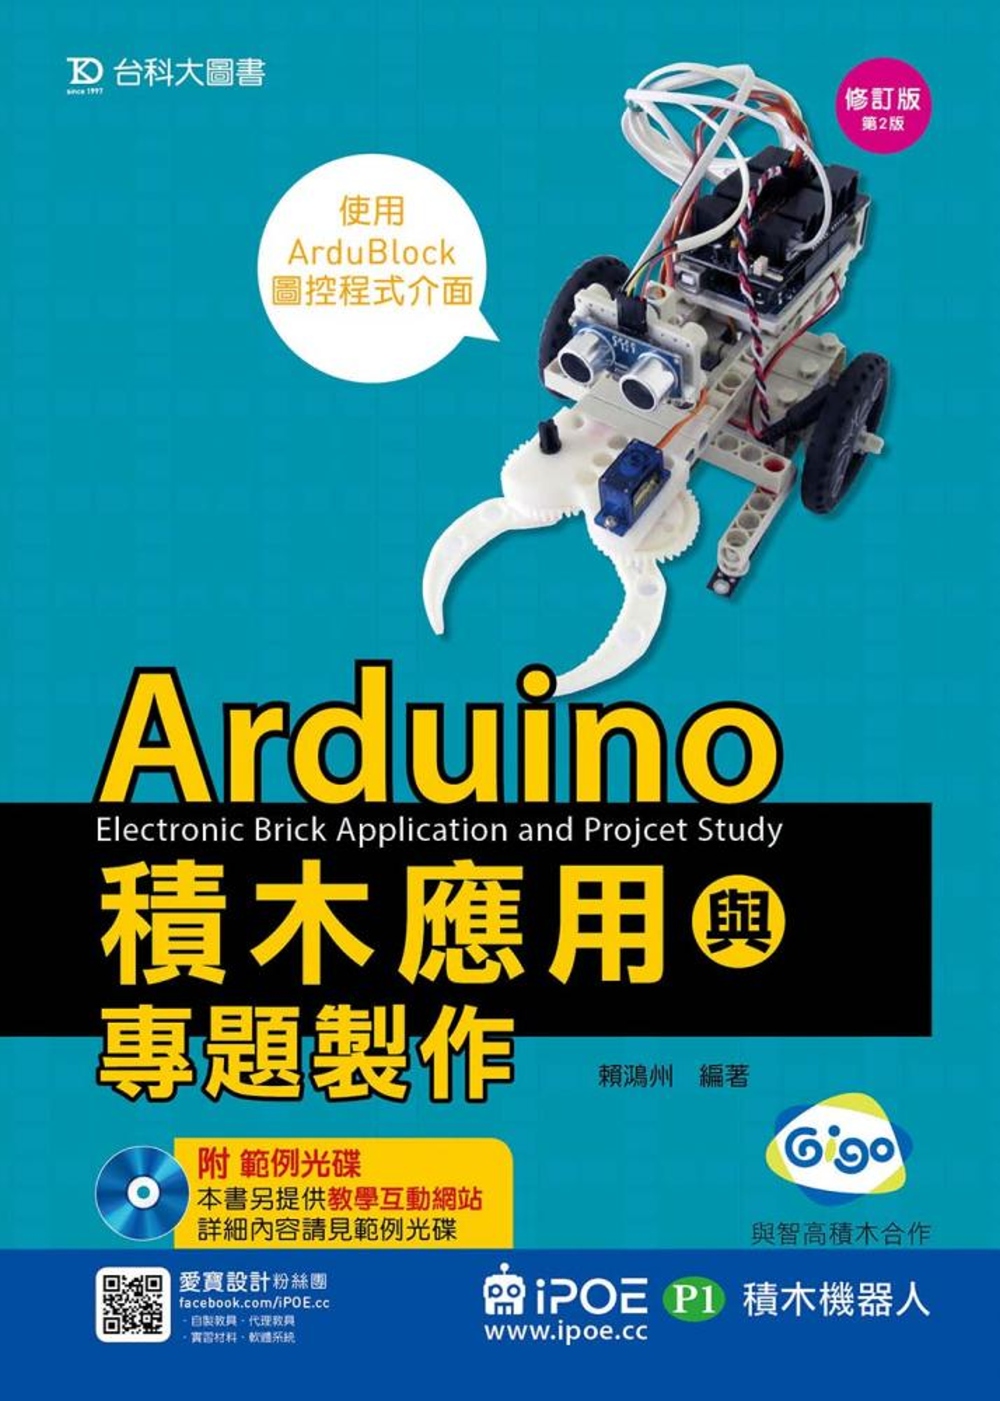 Arduino積木應用(iPOE P1積木機器人)與專題製作...